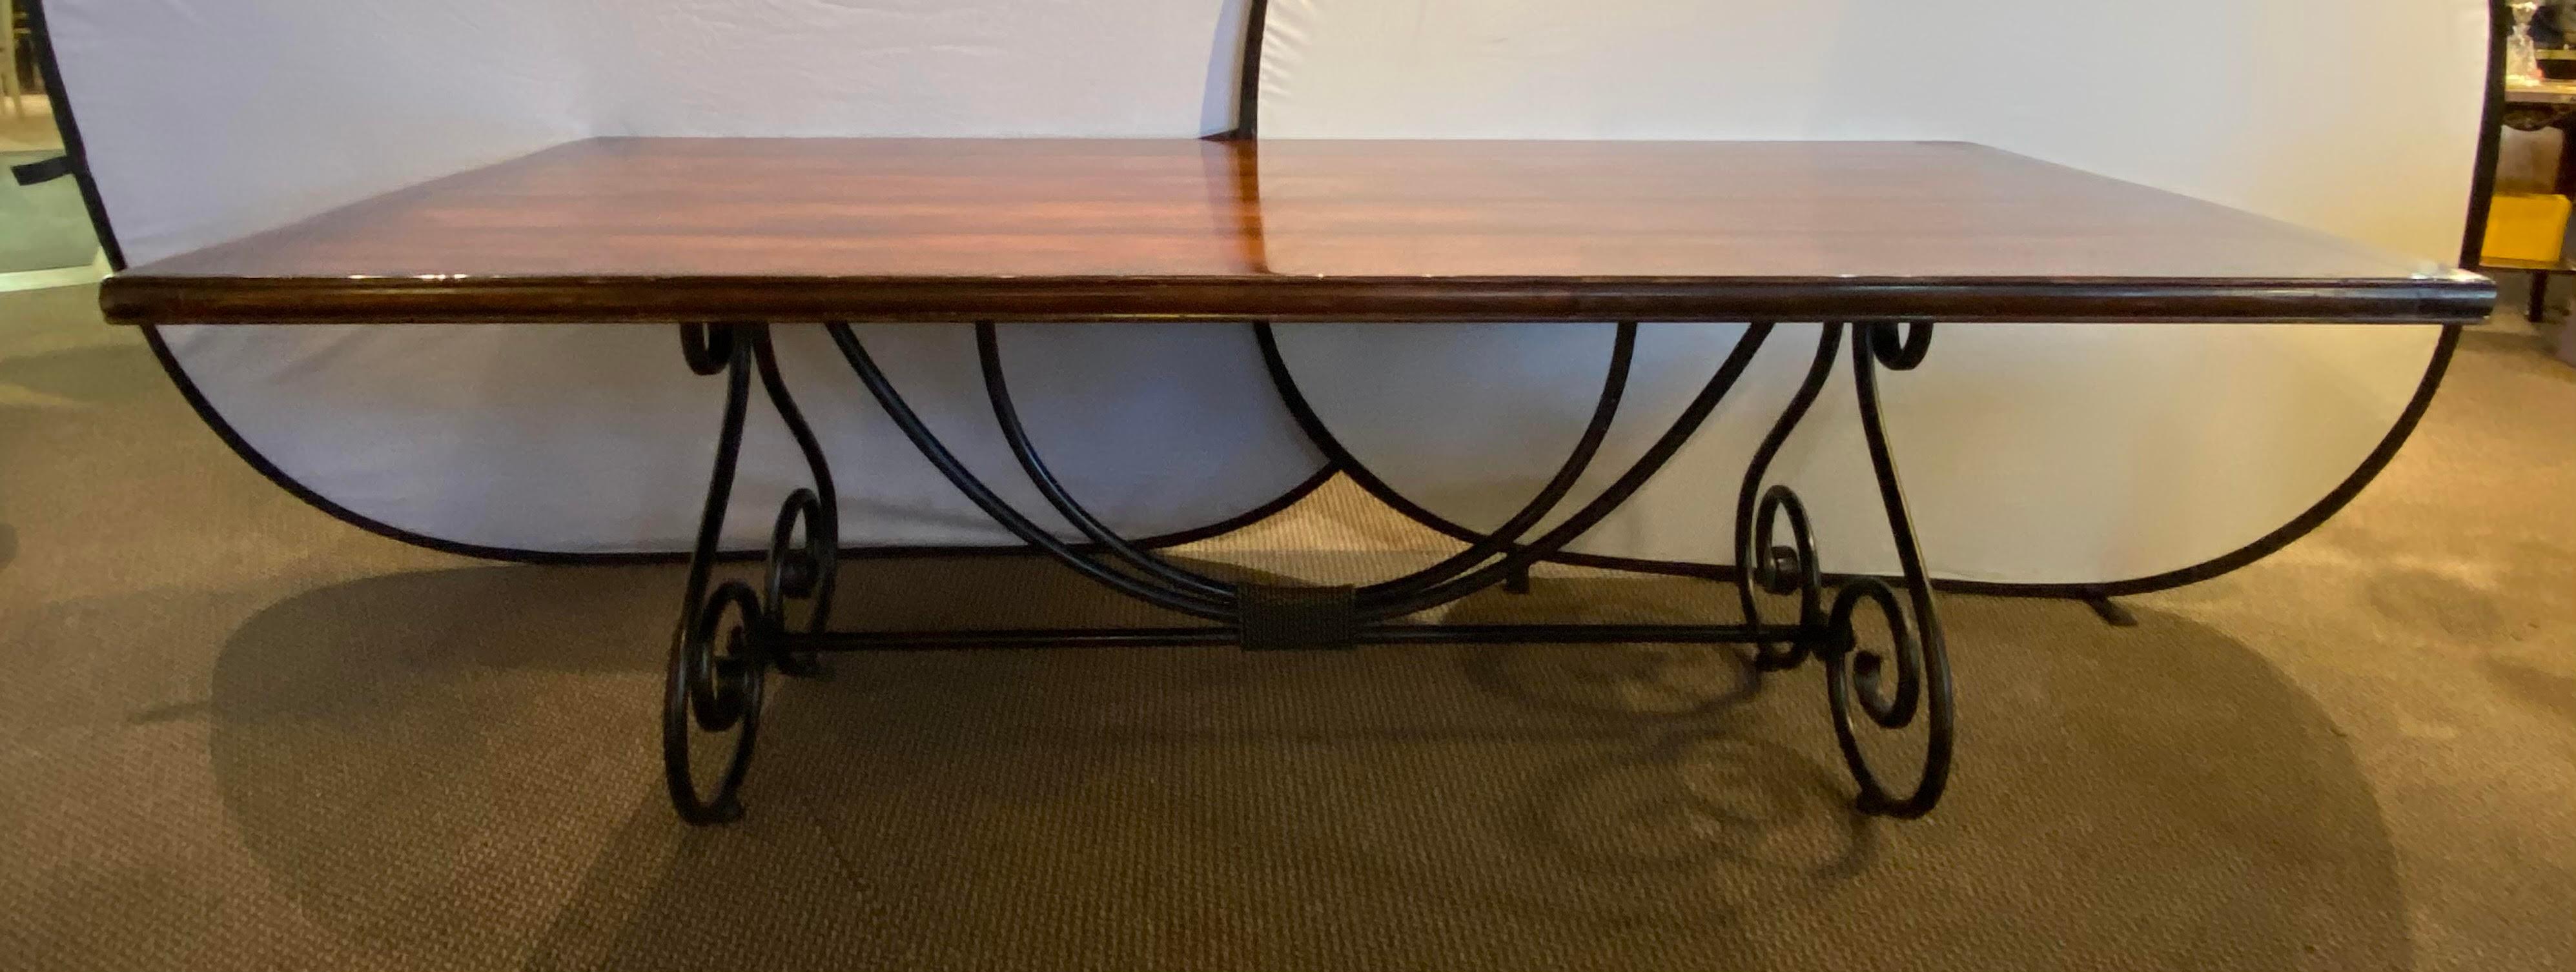 Table de salle à manger à base de volutes en métal et laiton finement travaillées. Le plateau en bois est soutenu par une base de style baroque en fer avec des décorations en fil de laiton. Une table de salle à manger ou de conférence